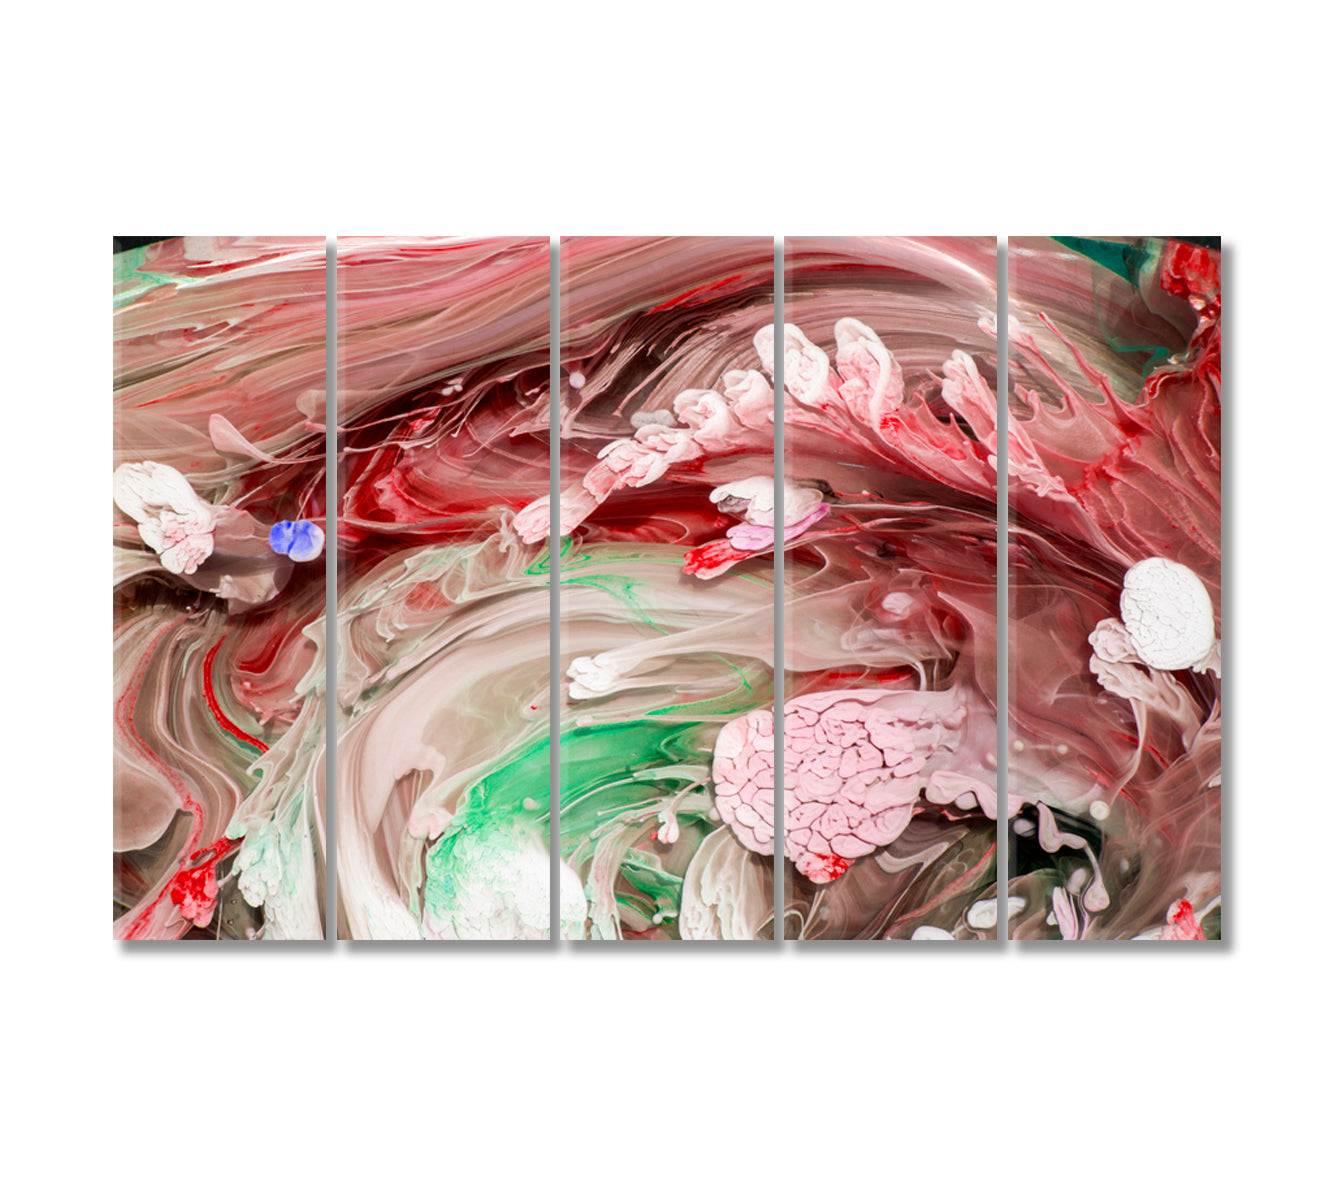 Mixed Liquid Paints Petri Art Canvas Print-Canvas Print-CetArt-5 Panels-36x24 inches-CetArt